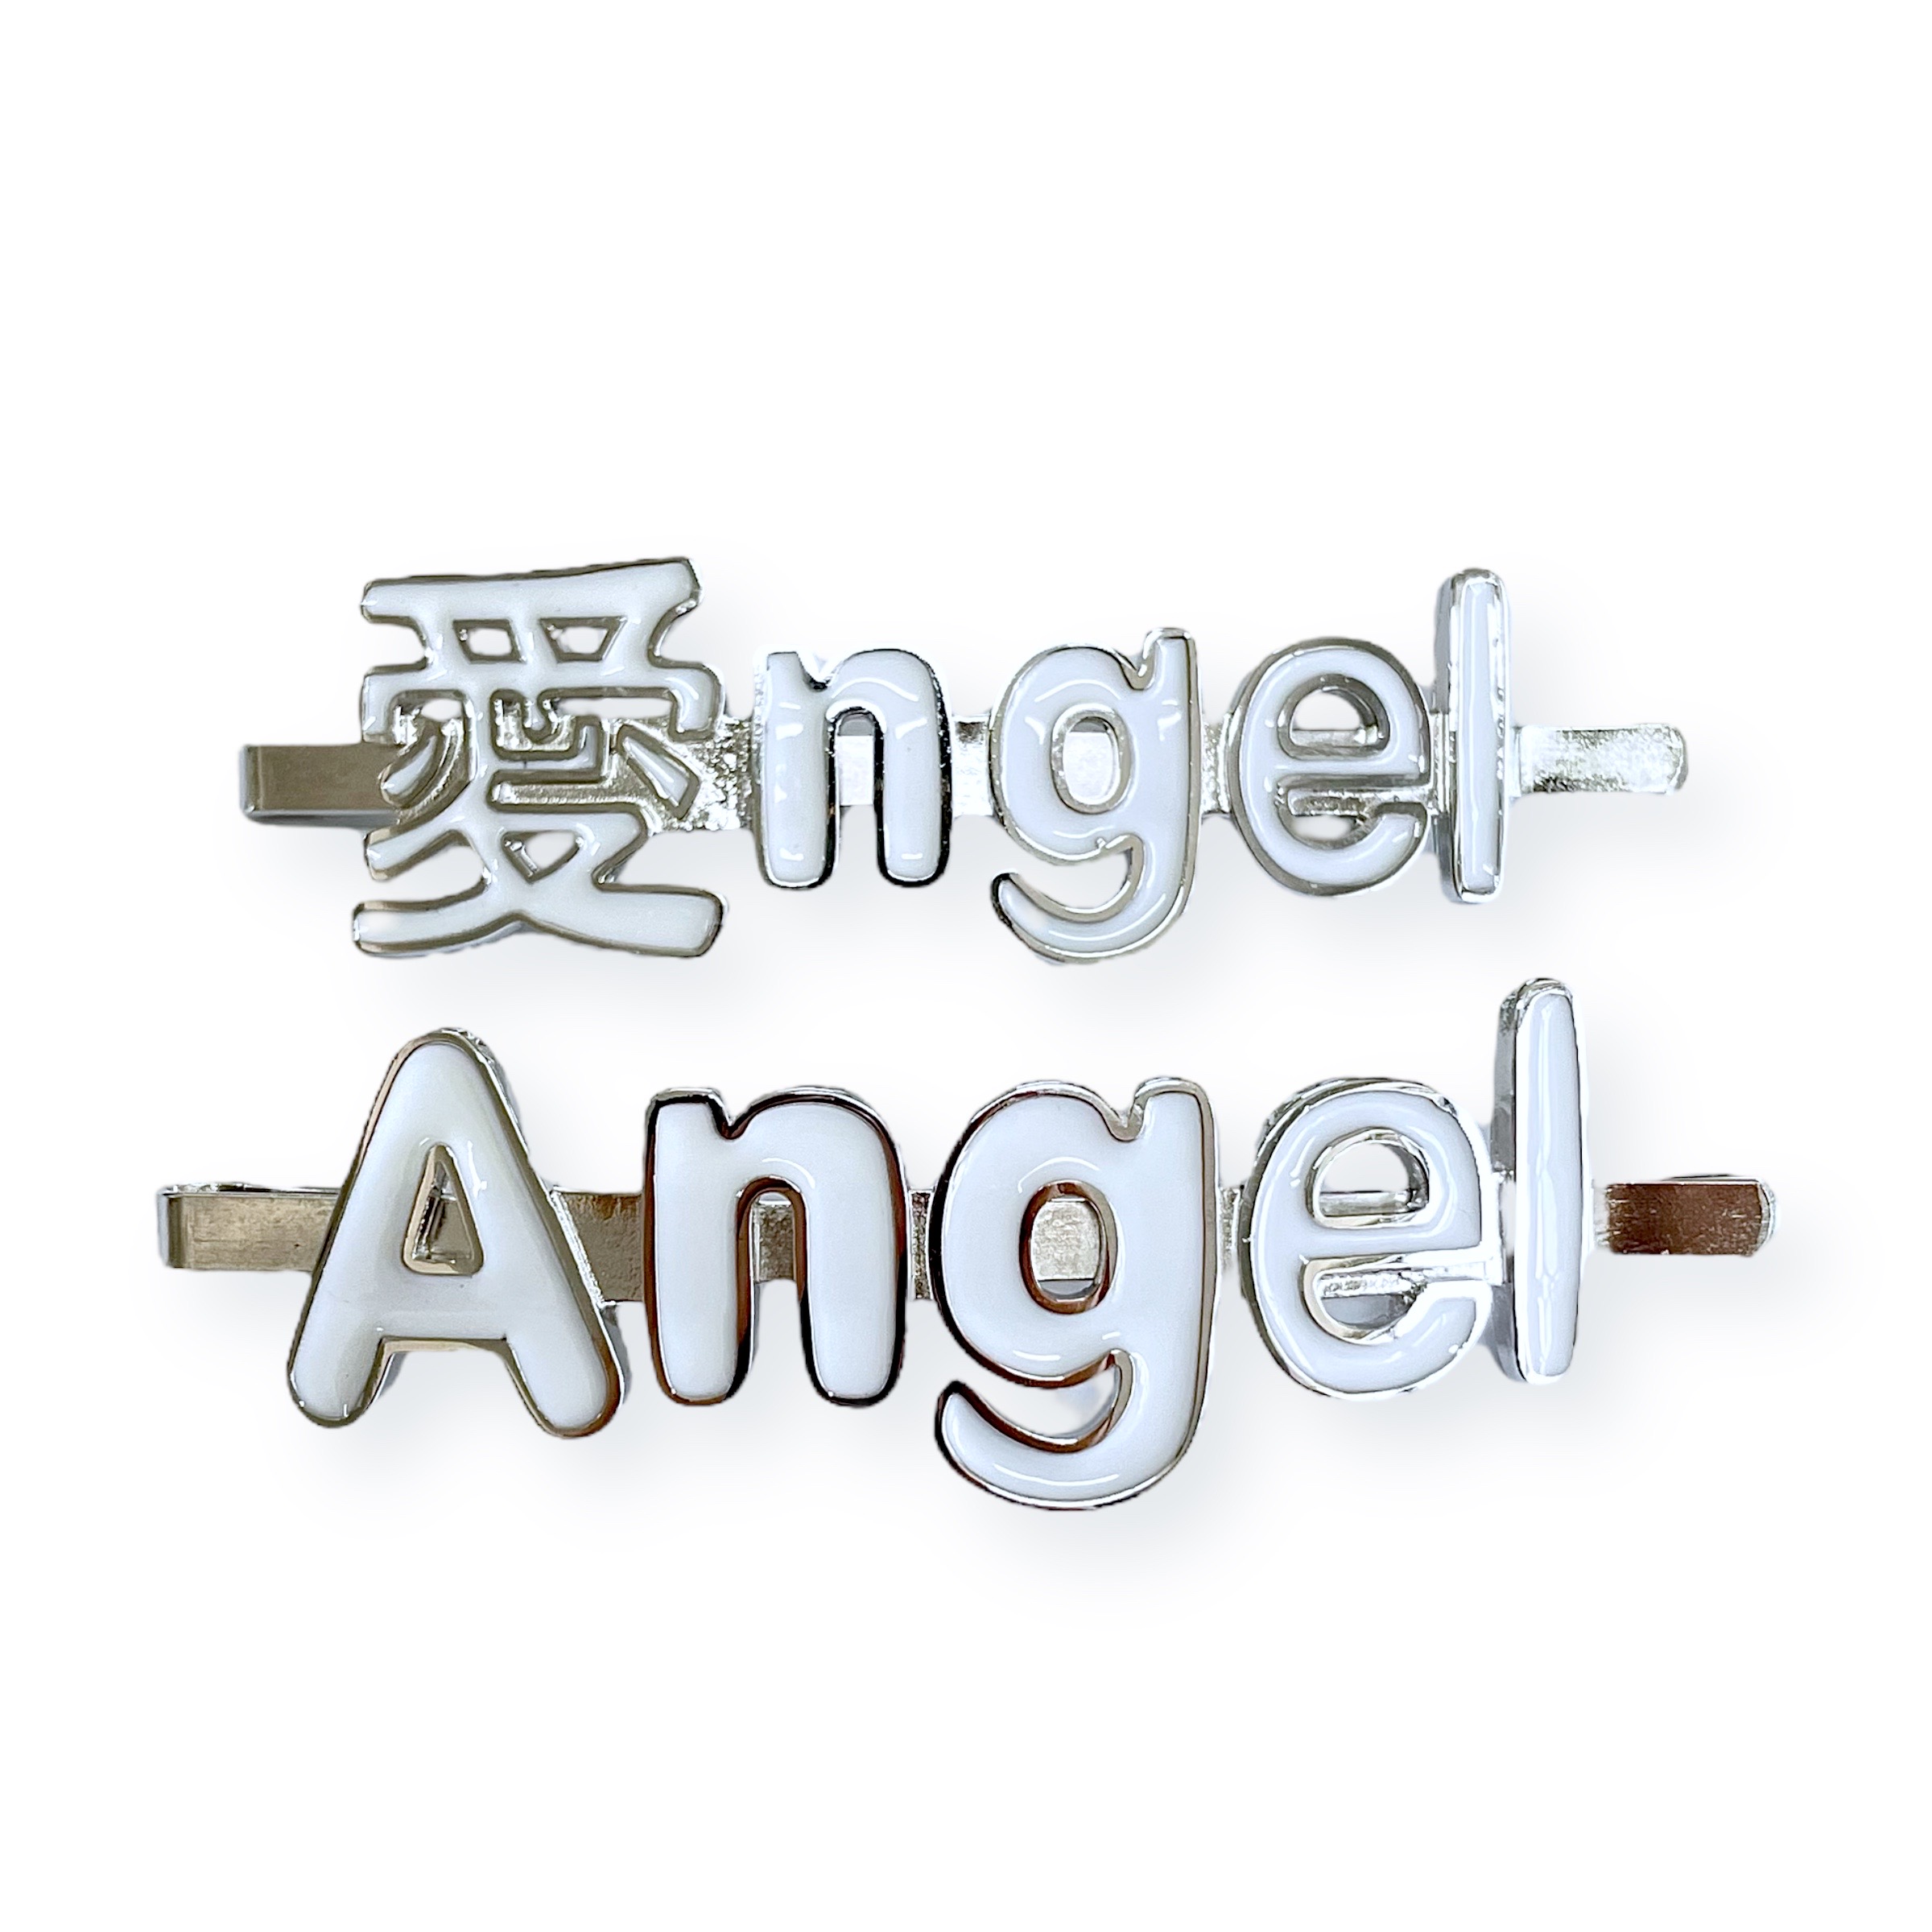 Angel hairpin